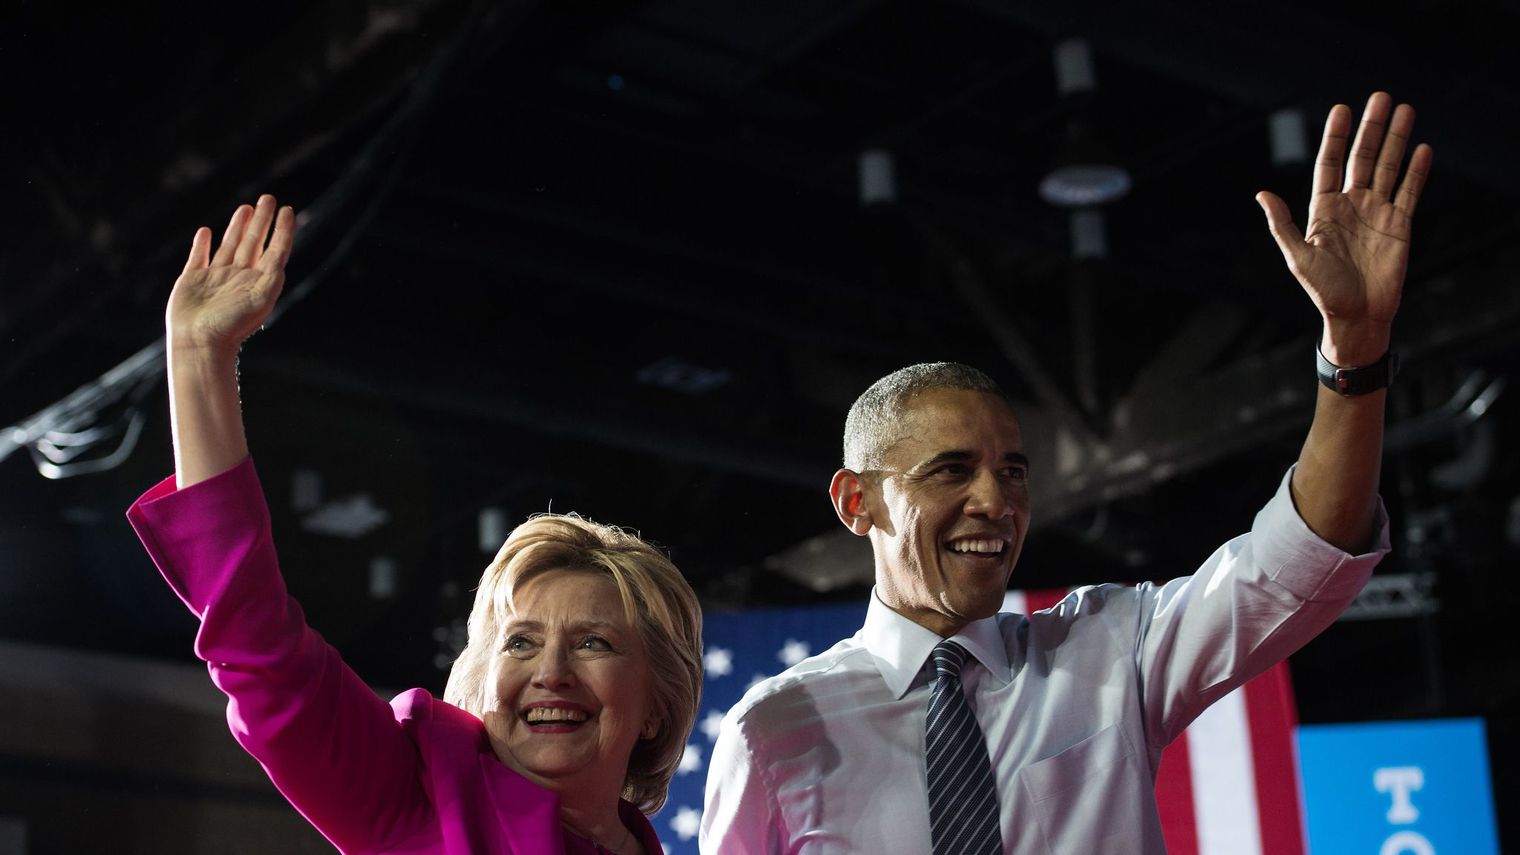 Obama et Clinton visés par des colis piégés aux explosifs